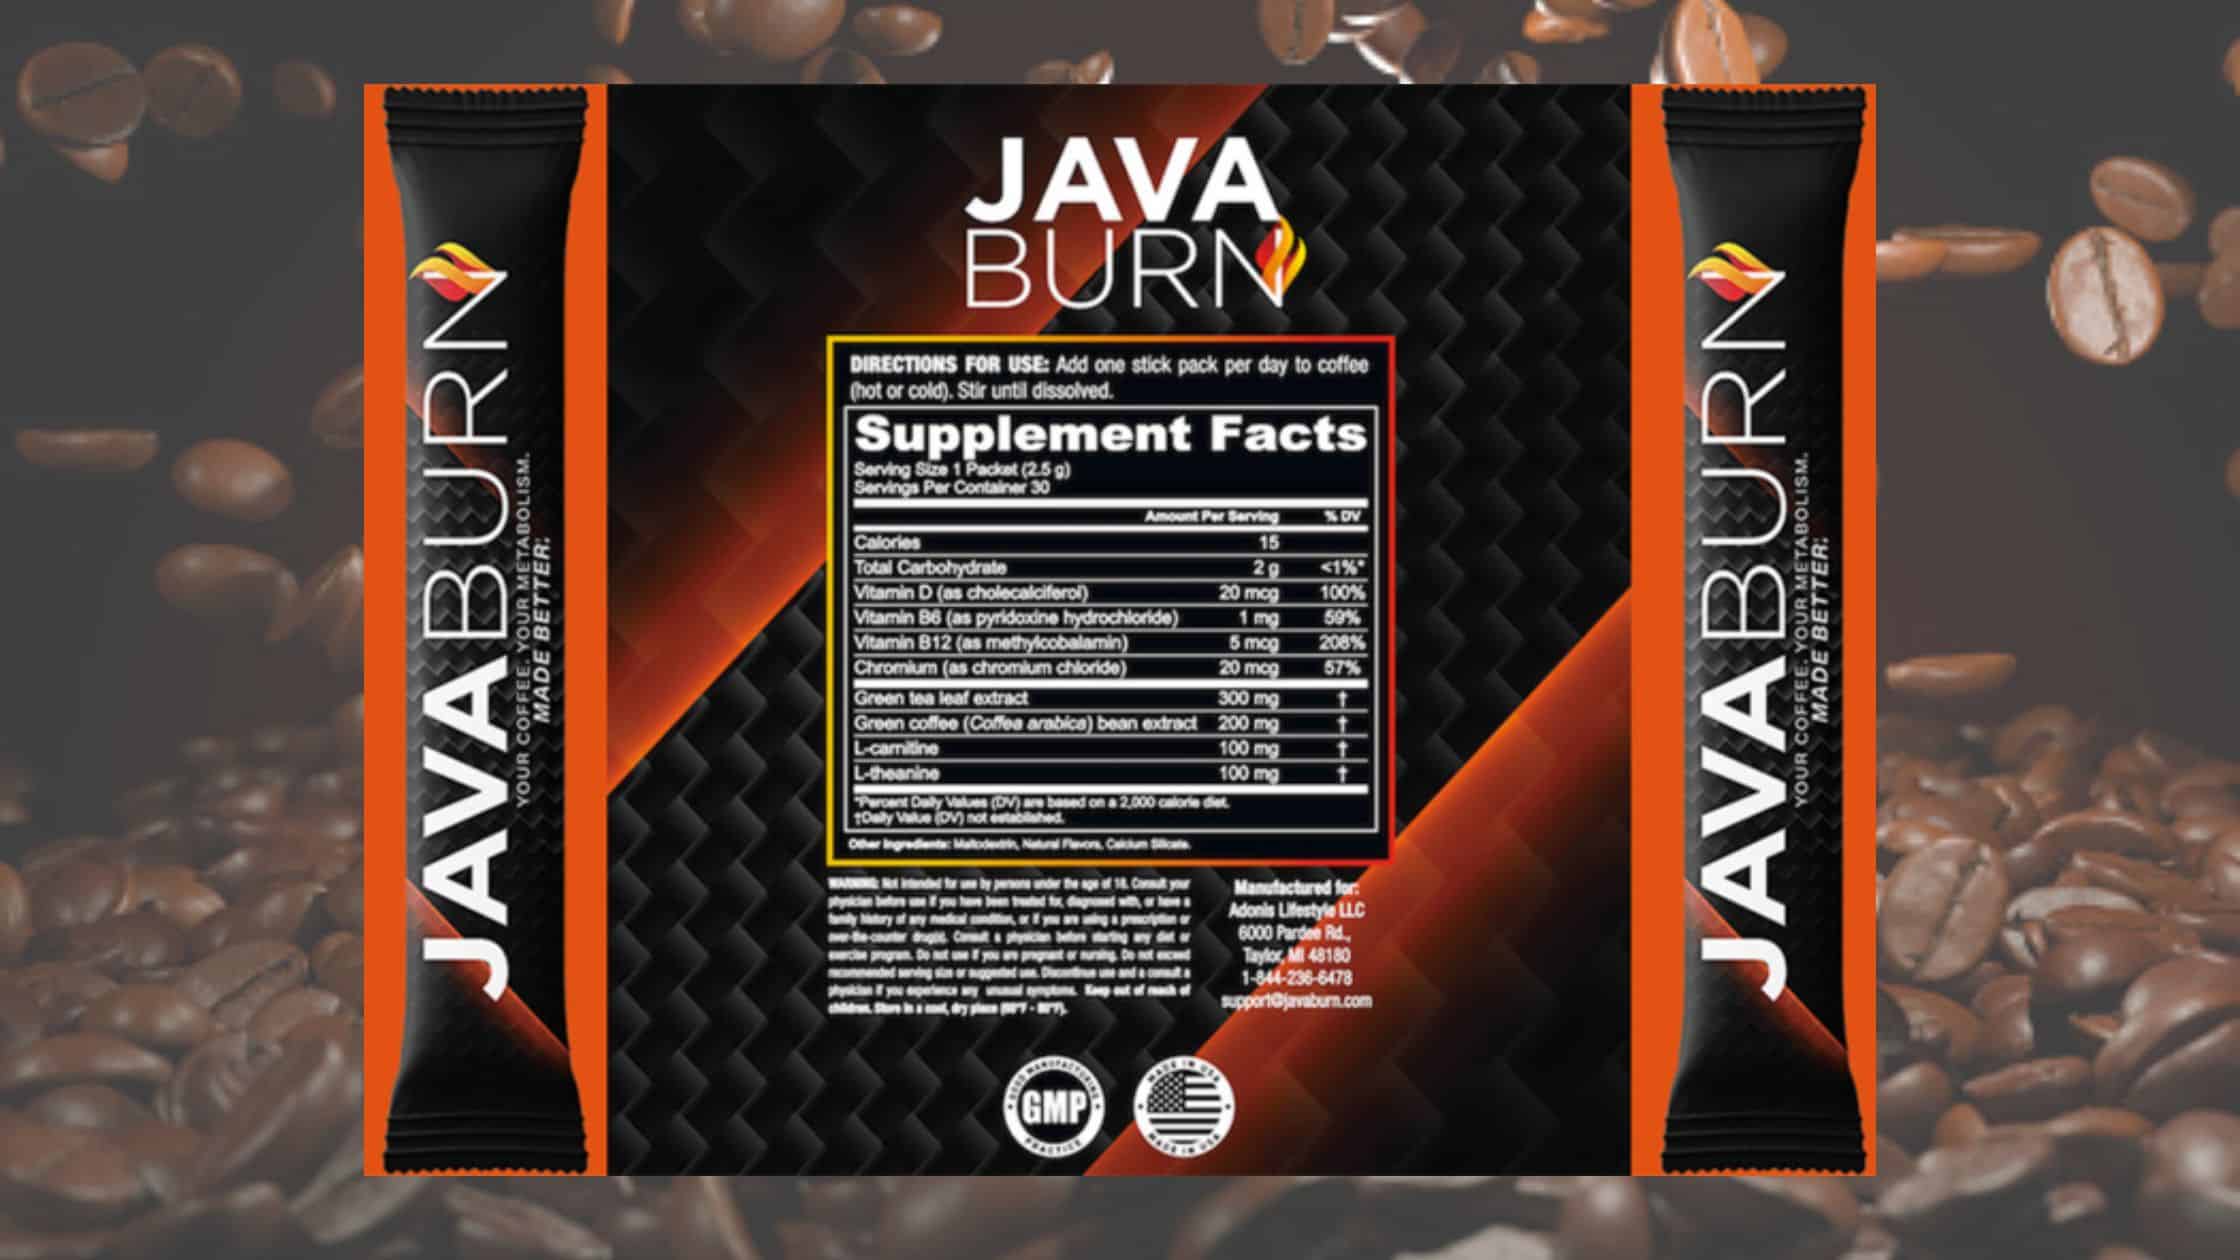 Java Burn Dosage